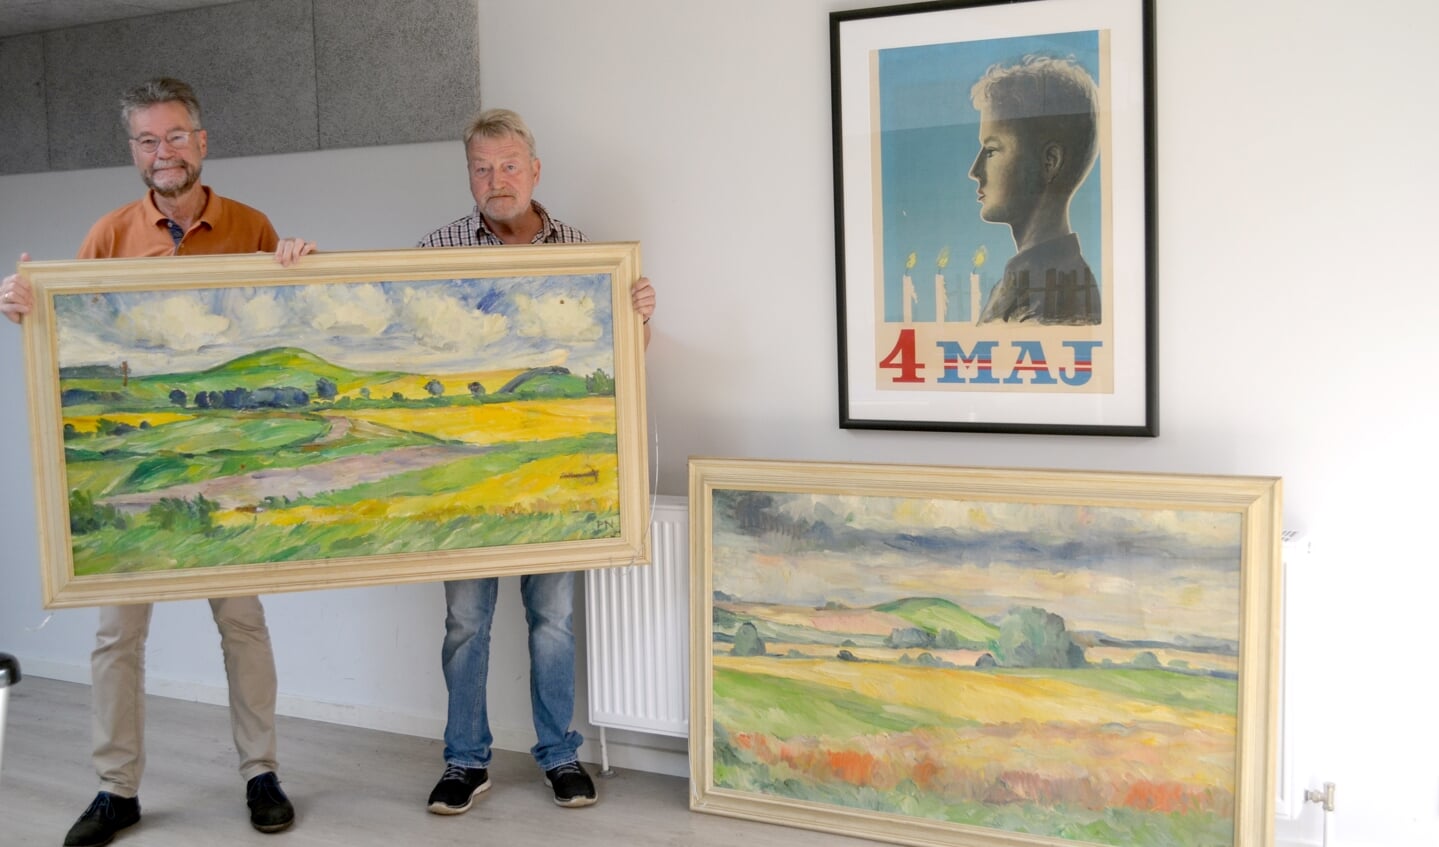 Formand Michael Longerich, til venstre, og kollegiets efor Ove Fonnesbæk viser er de to Peter Nicolaisen-værker frem. Håbet er, at de to malerier kommer til ære og værdighed igen ved at blive hængt op i fællessalen.